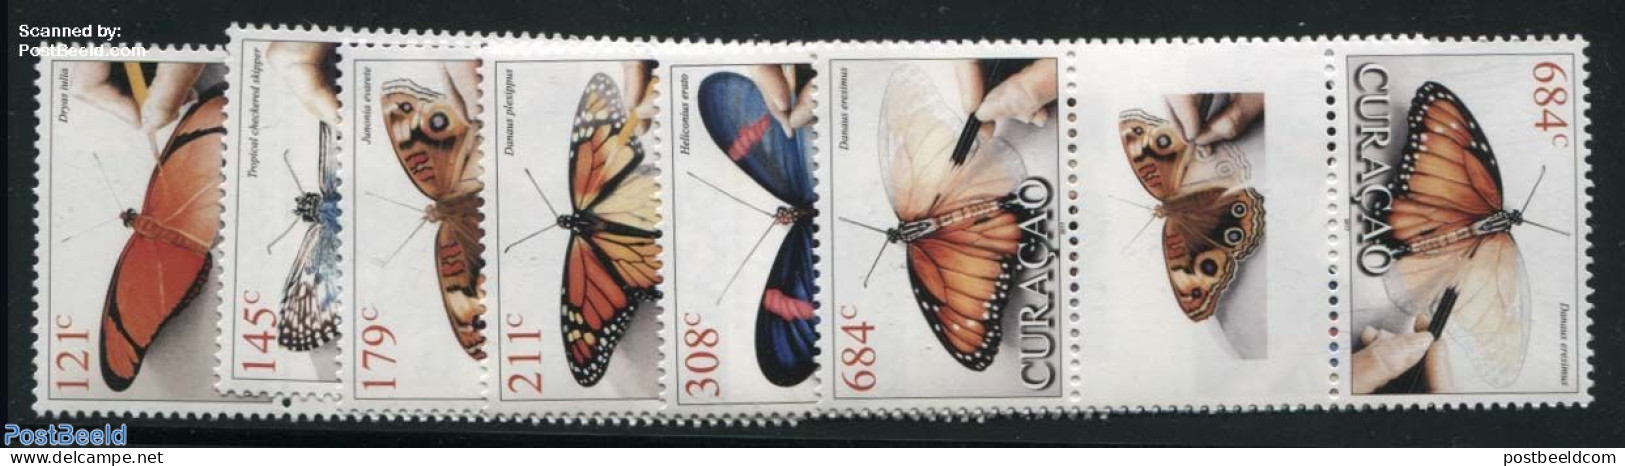 Curaçao 2017 Butterflies 6v, Gutterpairs, Mint NH, Nature - Butterflies - Curazao, Antillas Holandesas, Aruba